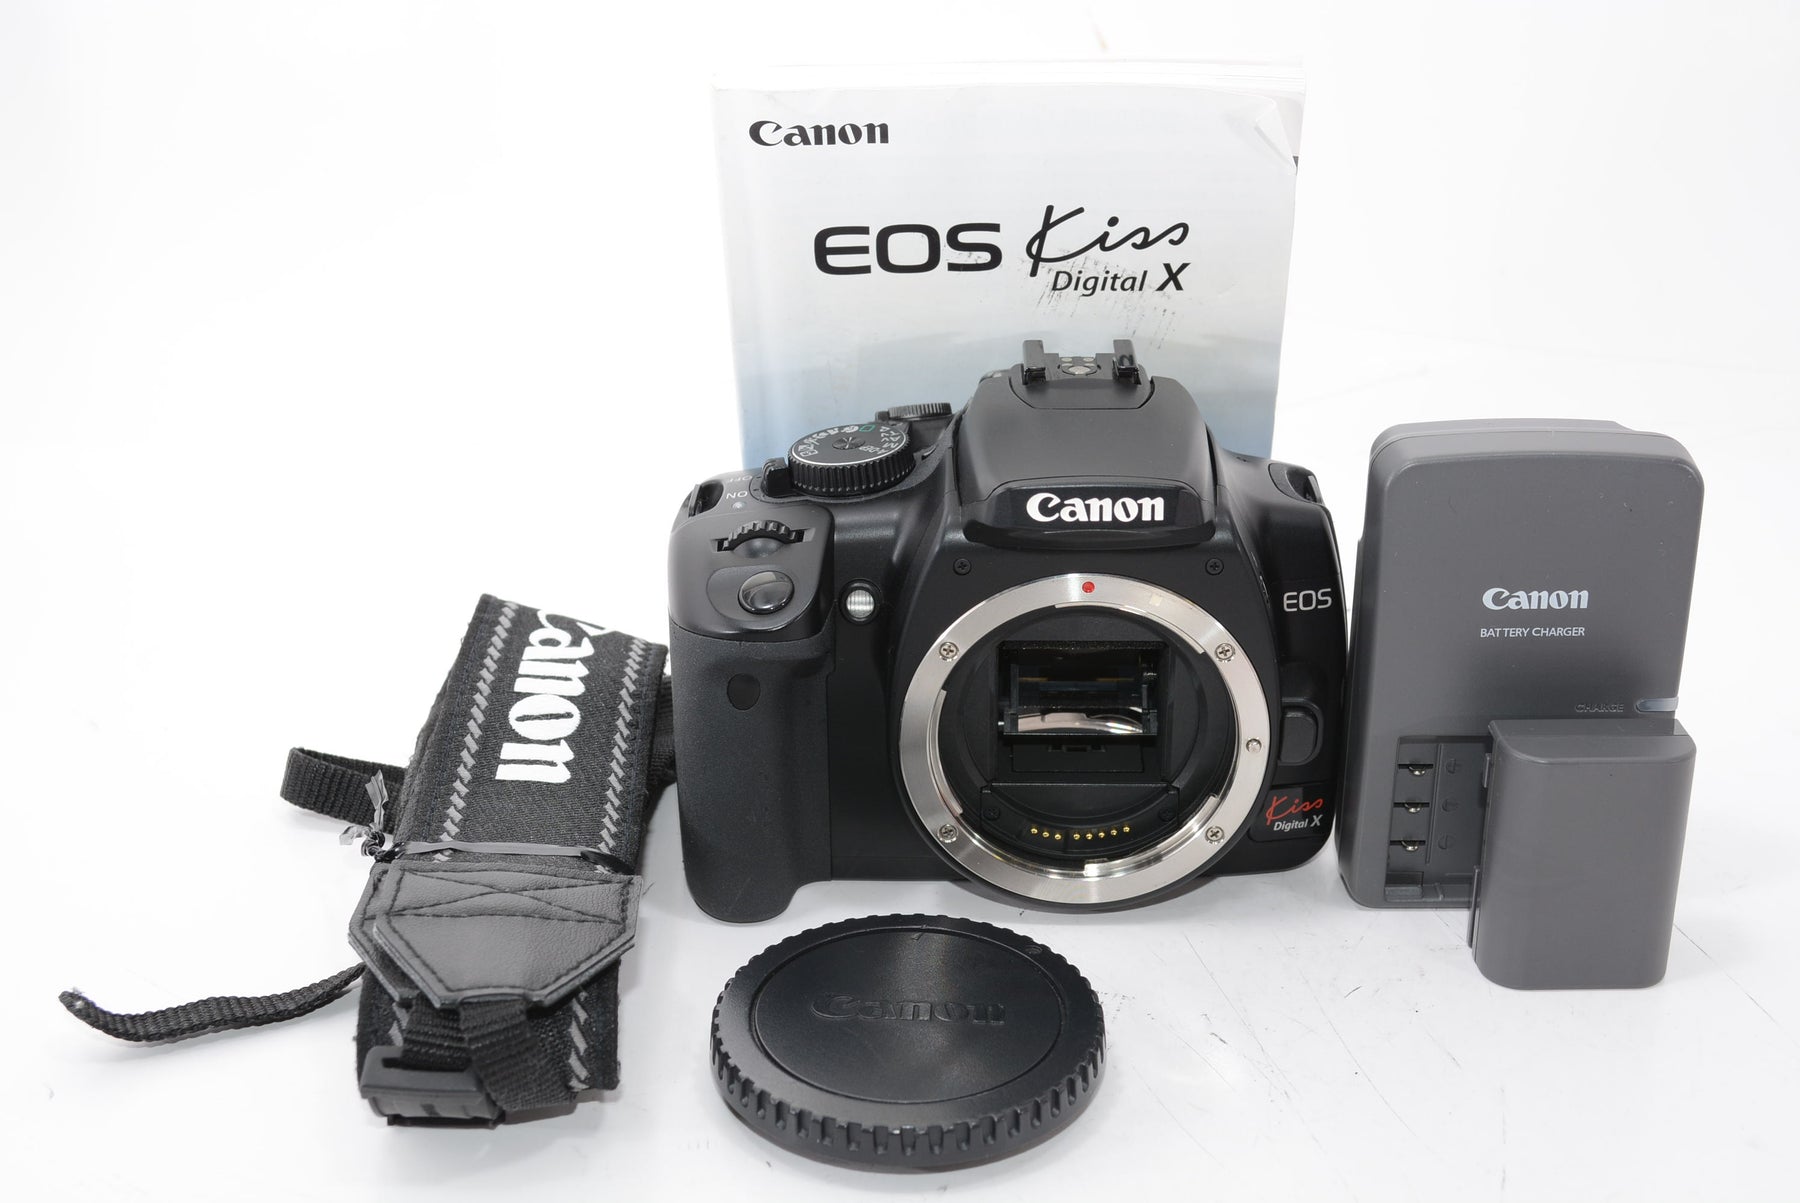 Canon デジタル一眼レフカメラ EOS Kiss X6i ボディ KISSX6i-BODY